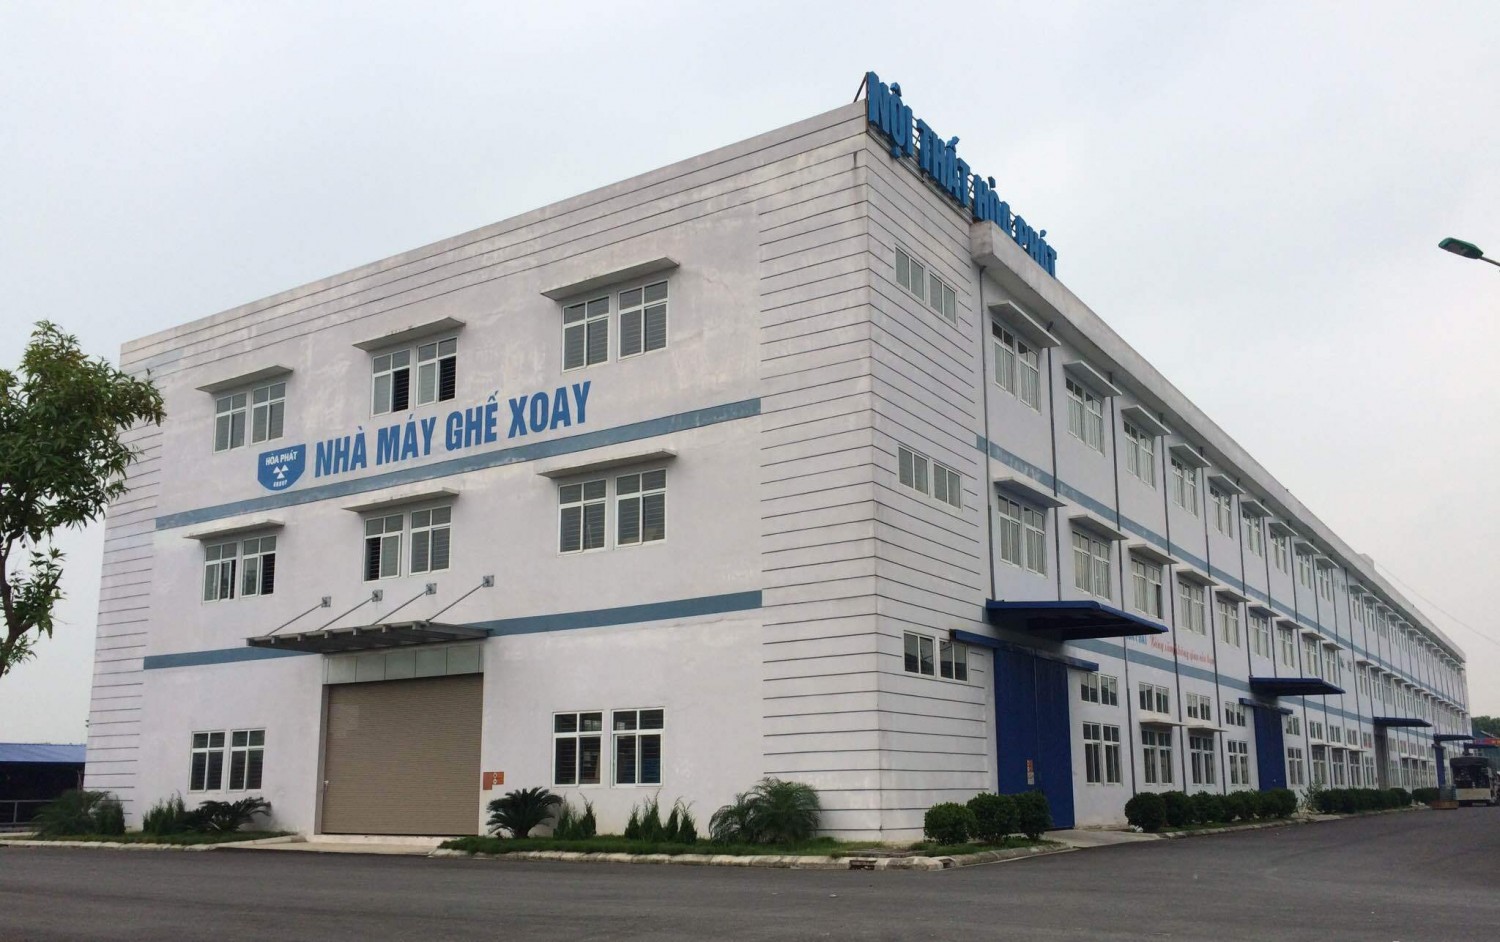 Lắp đặt 3 thang máy tải hàng cho nhà máy ghế xoay Hòa Phát- Hưng Yên